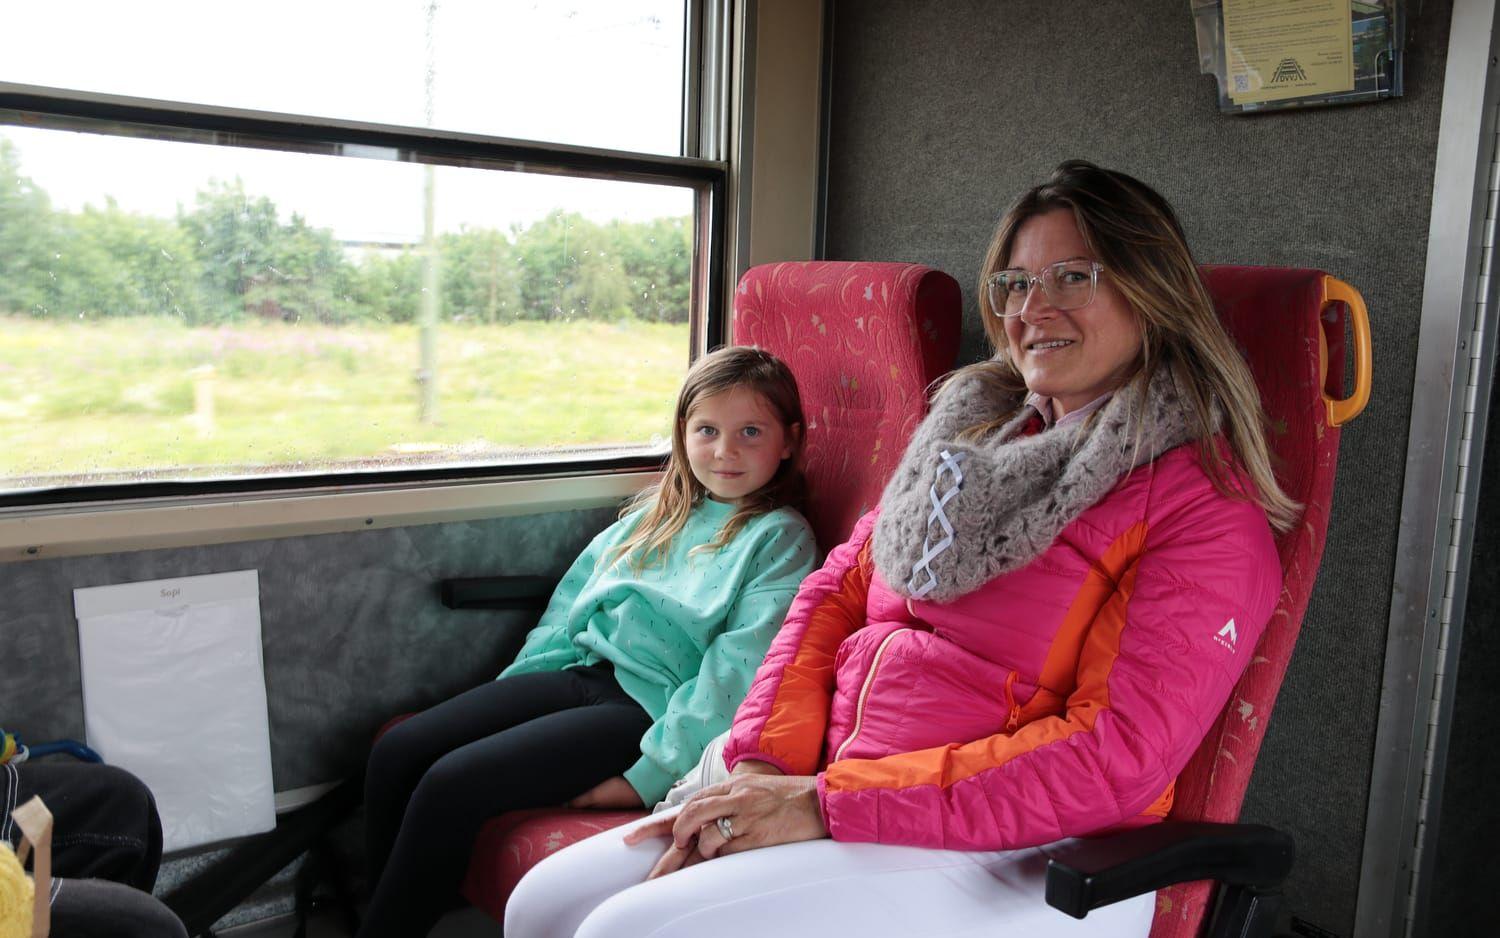 Några som har åkt långt redan innan de satte sig på tåget är Marlene, 7 år, och hennes mamma Solveig från Tyskland. ”Vi besökte Dalslands kanal. Det var väldigt vackert och spännande även om vädret inte var det bästa idag”, säger Solveig.